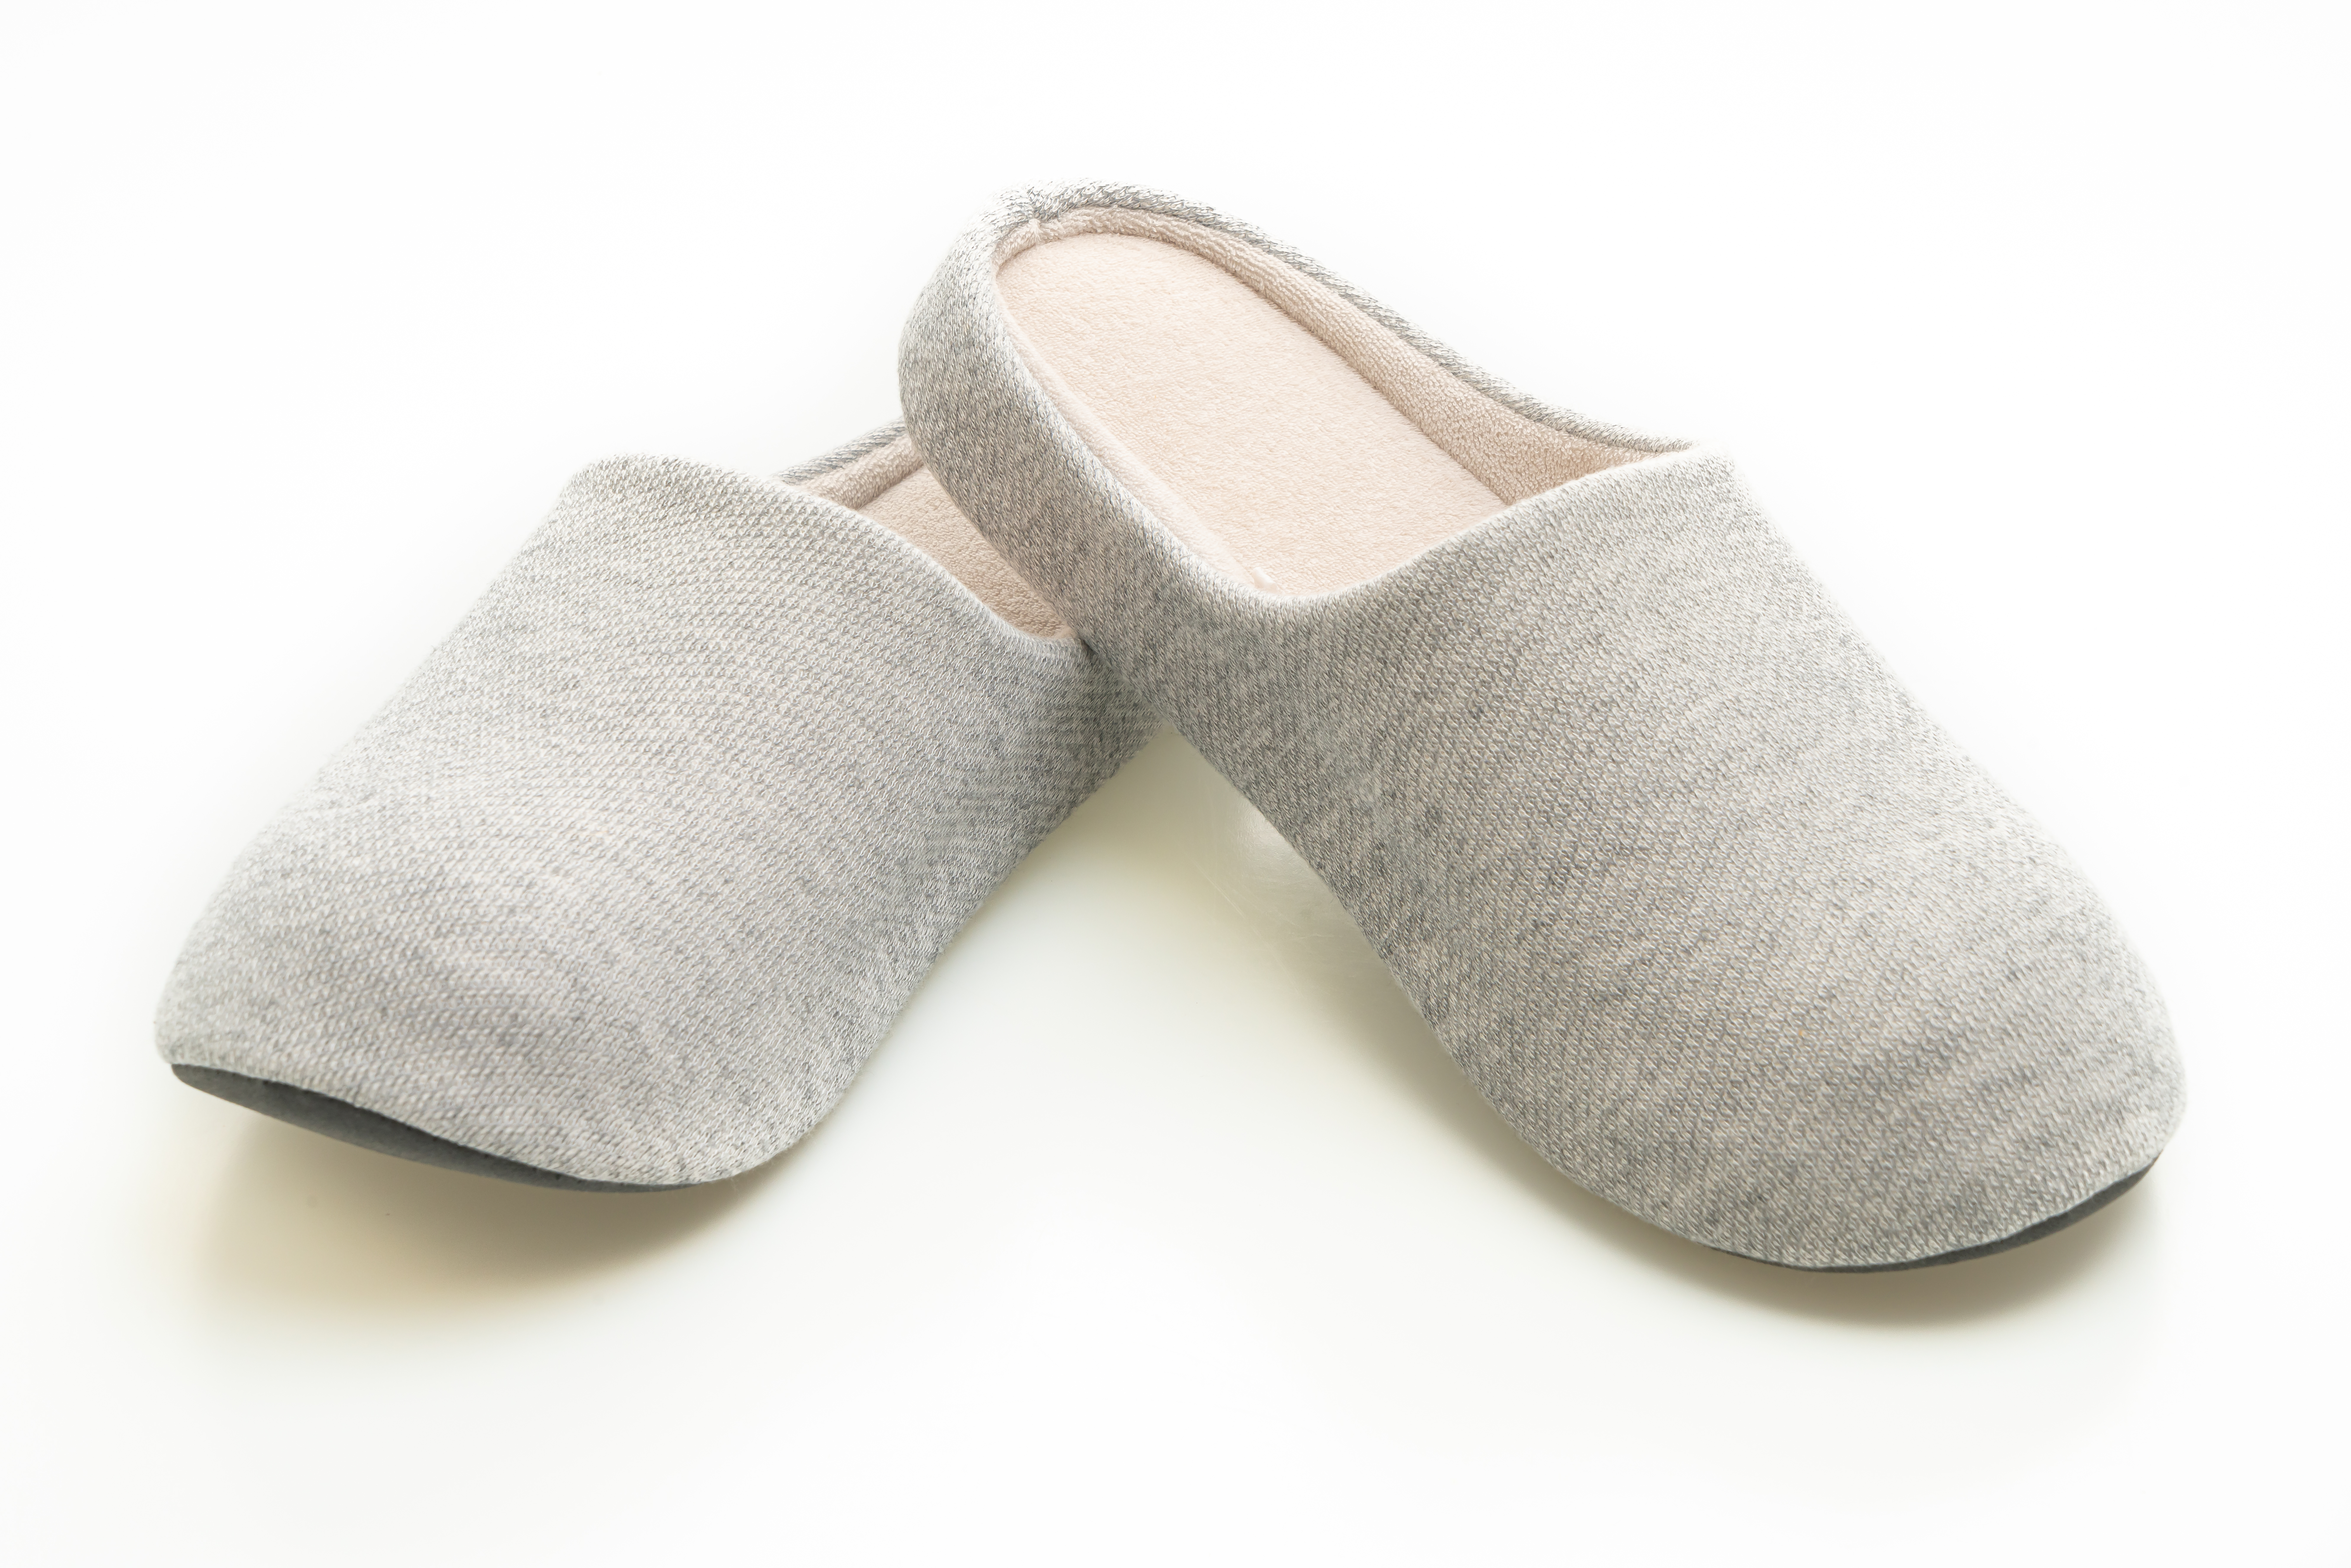 Pantoffels voor cozy, warme voetjes!